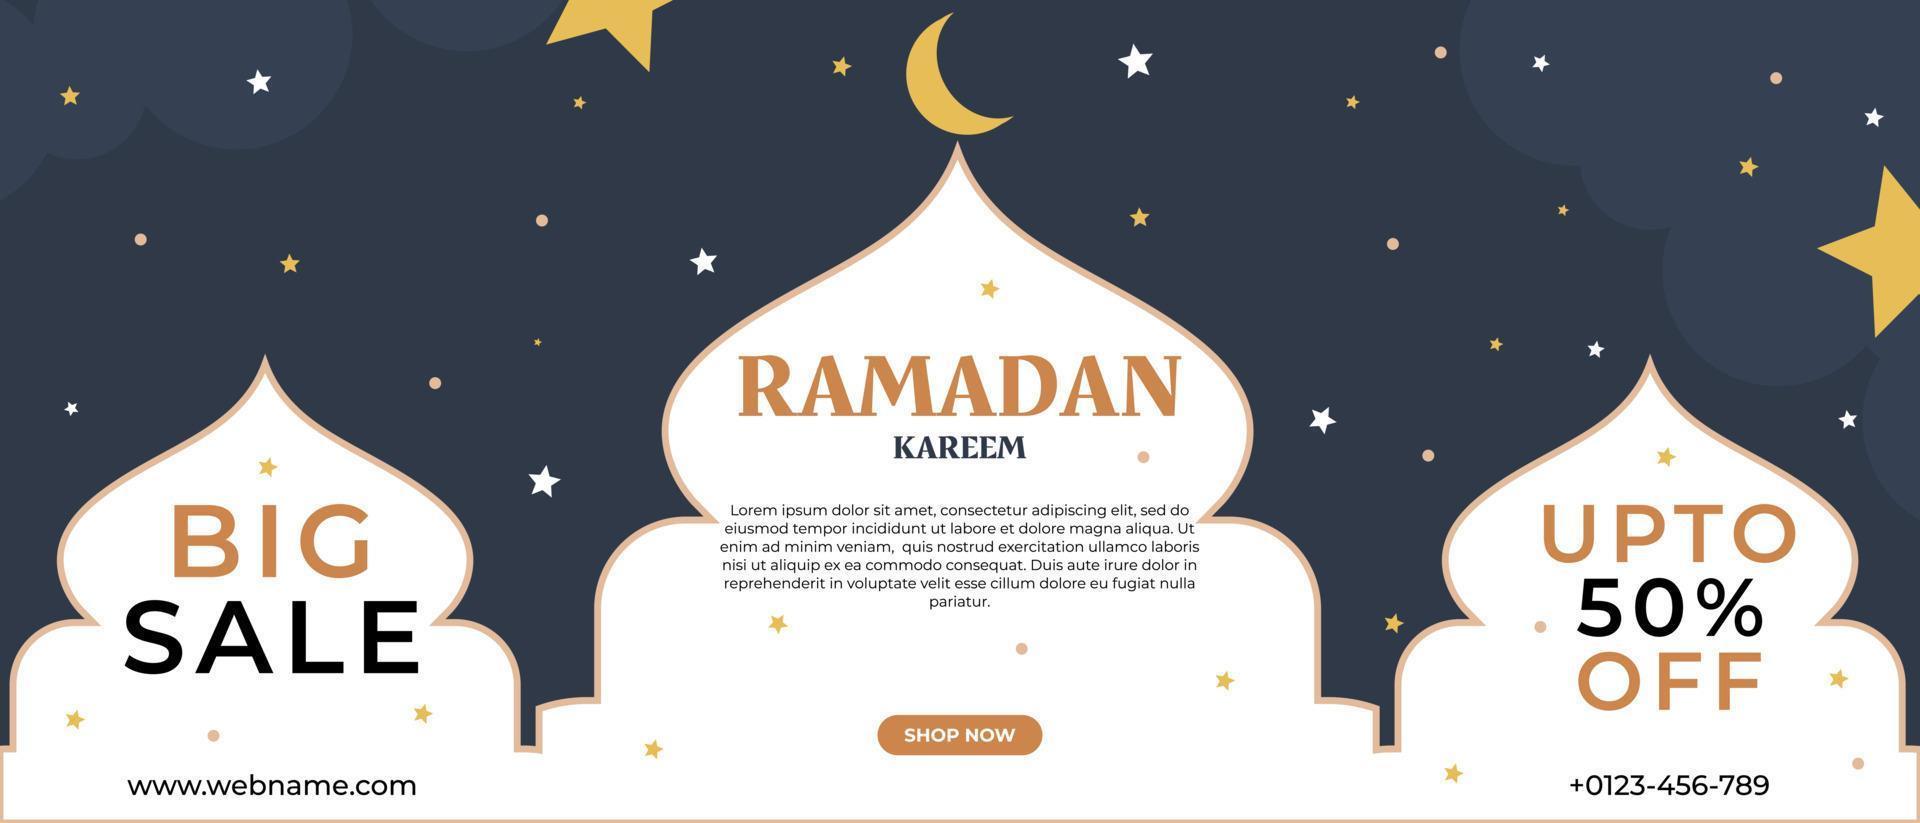 Ramadan-Verkaufsrabatt-Banner-Vorlagen-Werbedesign für Unternehmen vektor